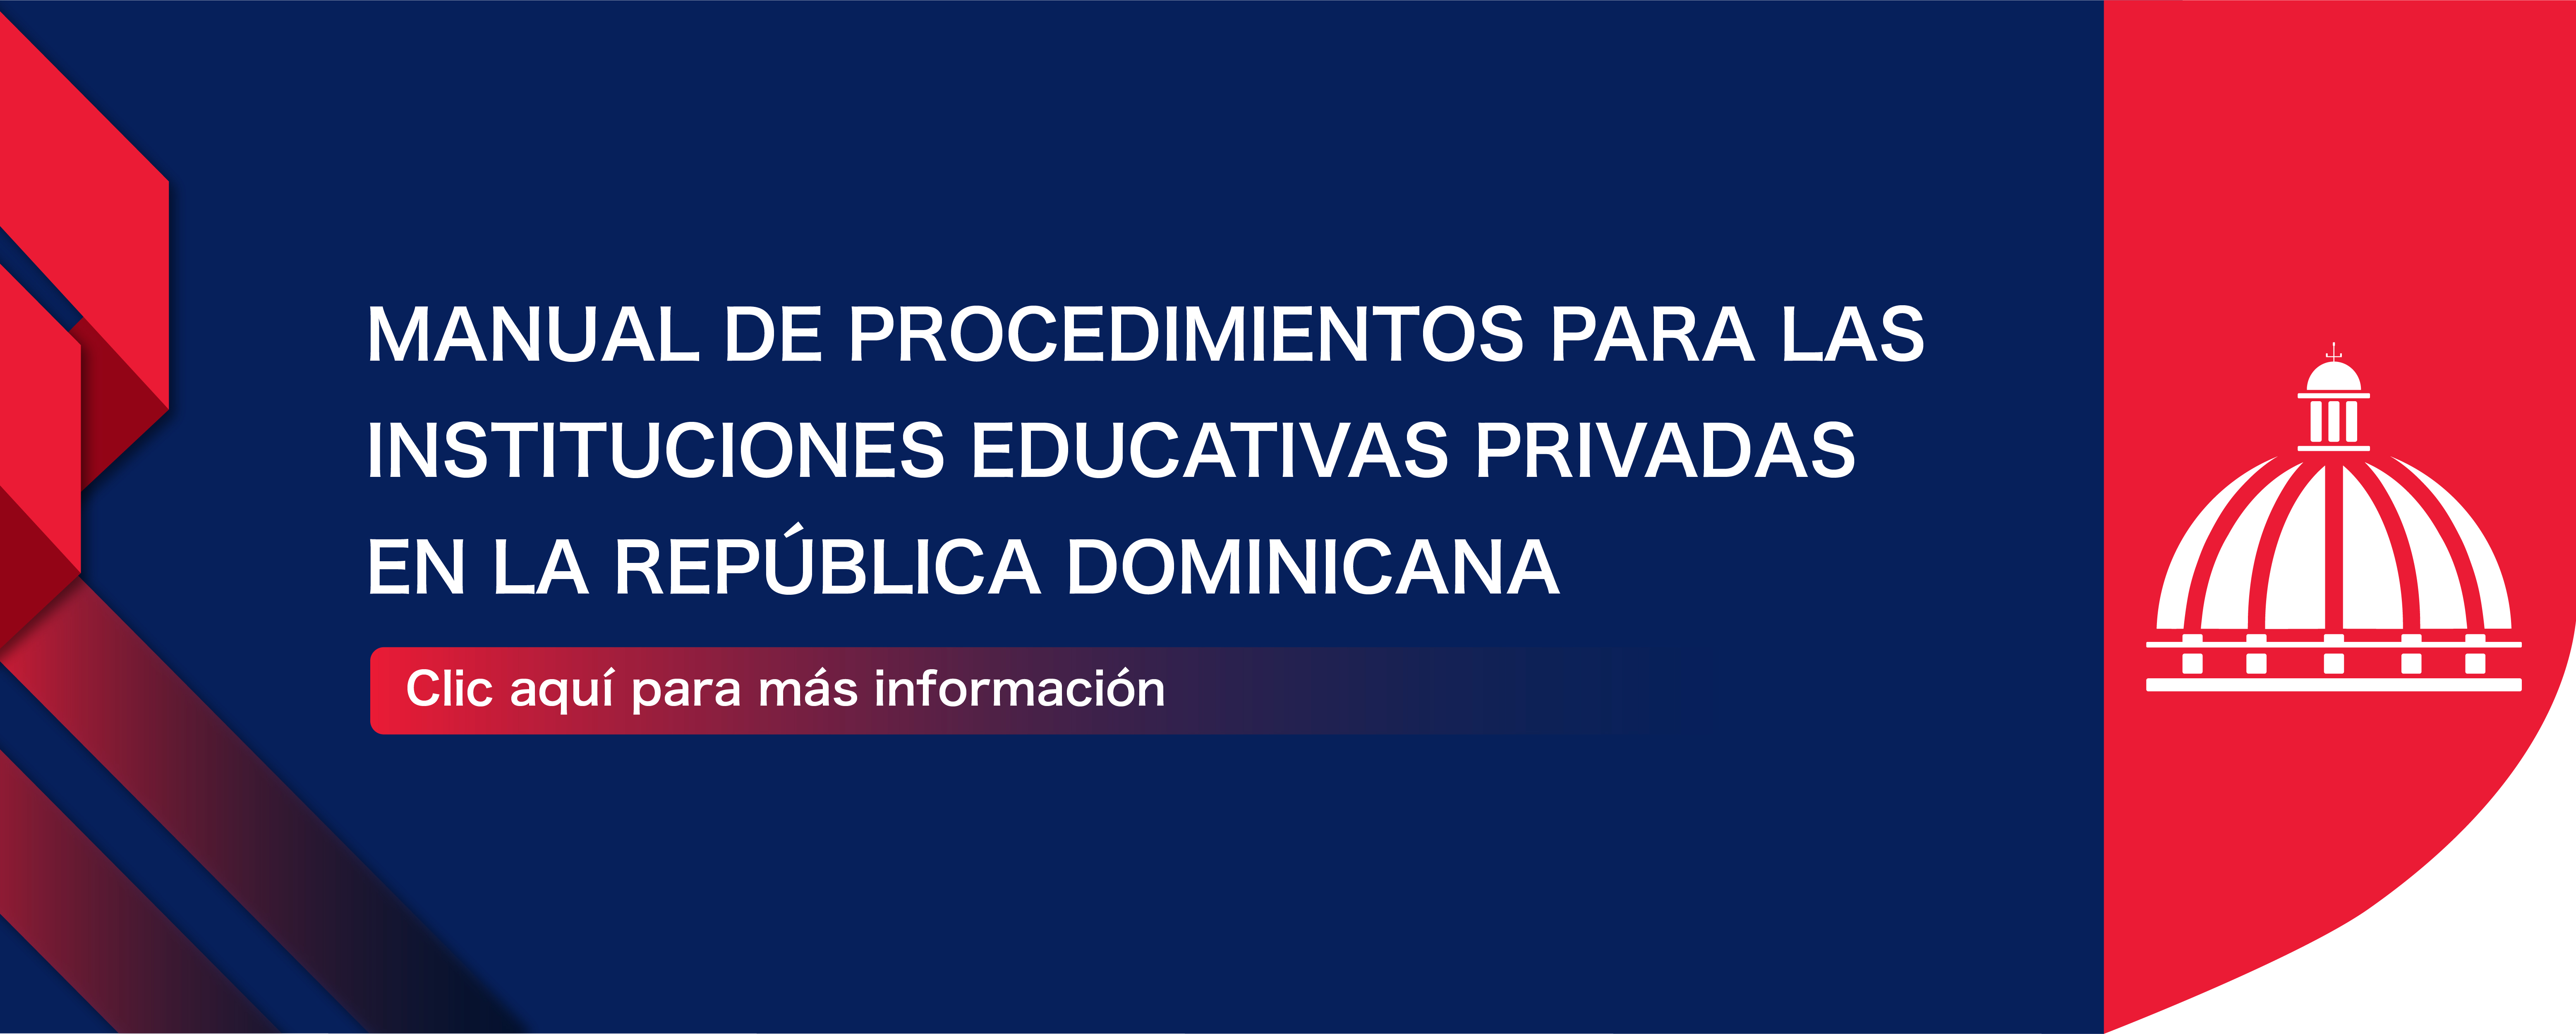 Manual de procedimientos para las instituciones privadas en la República Dominicana